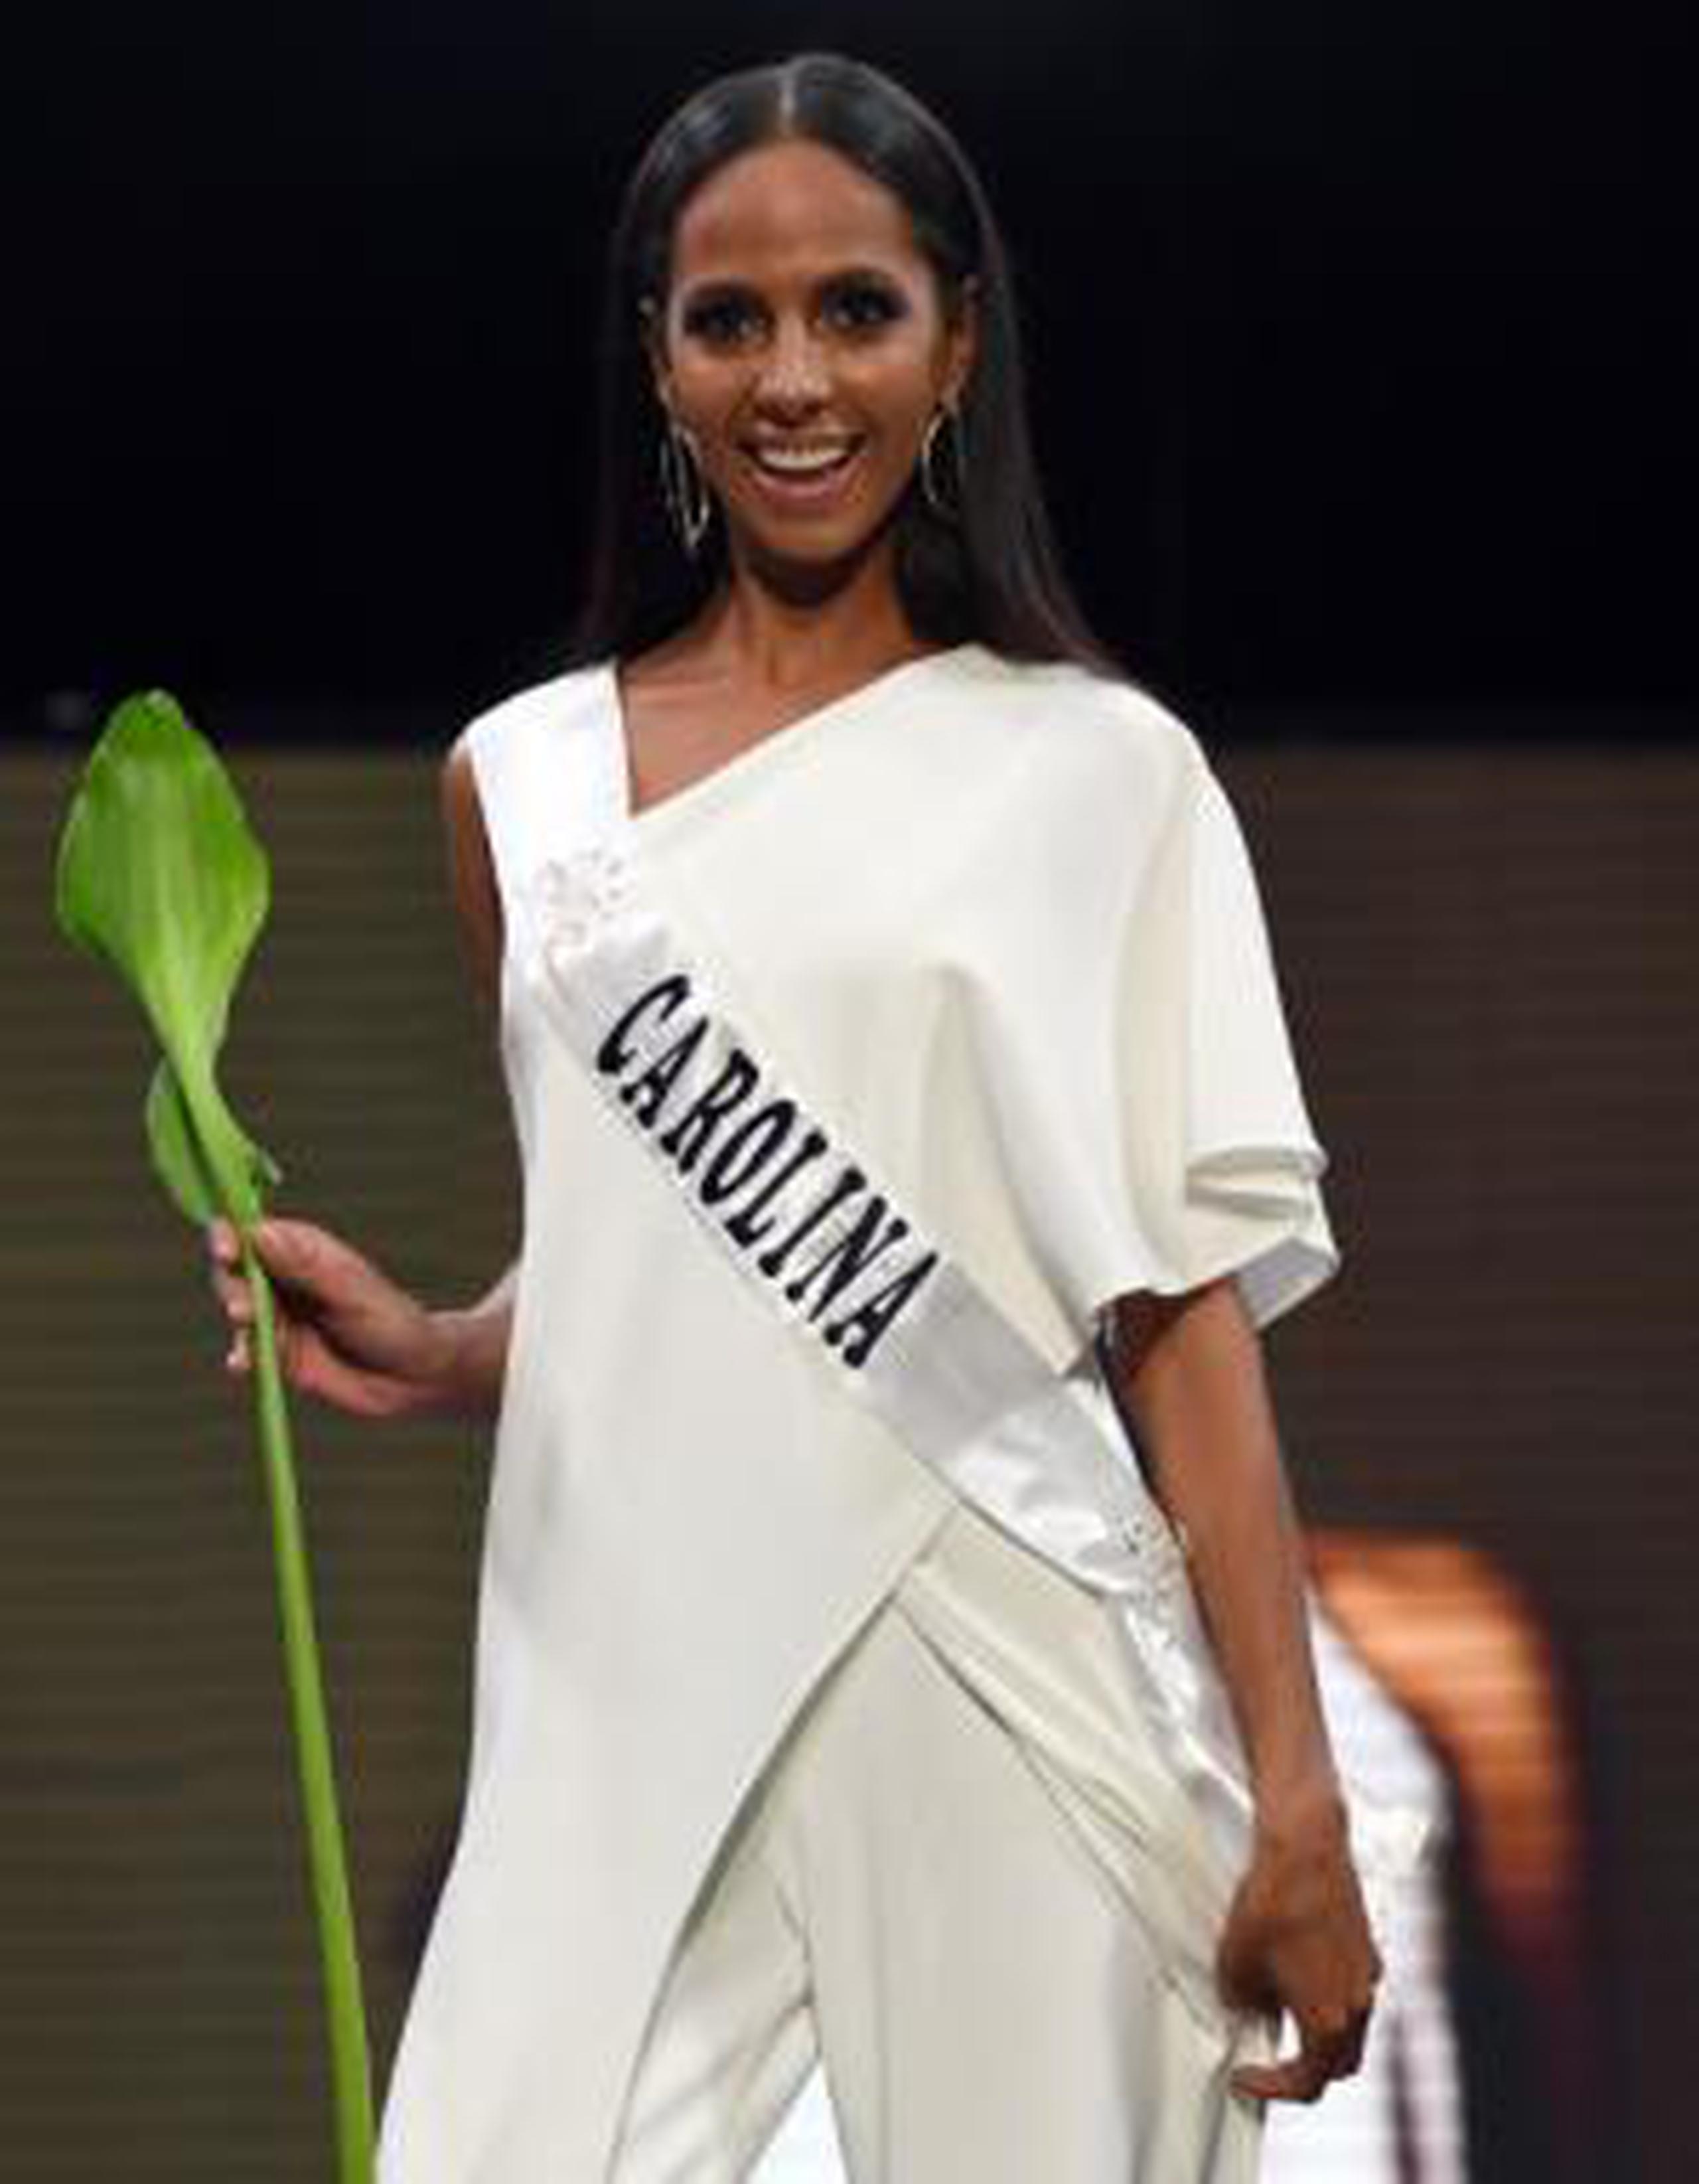 De no obtener el permiso por parte de la organización de Miss International, la reina carolinense tendría la oportunidad de participar el año próximo en el certamen local. (andre.kang@gfrmedia.com)